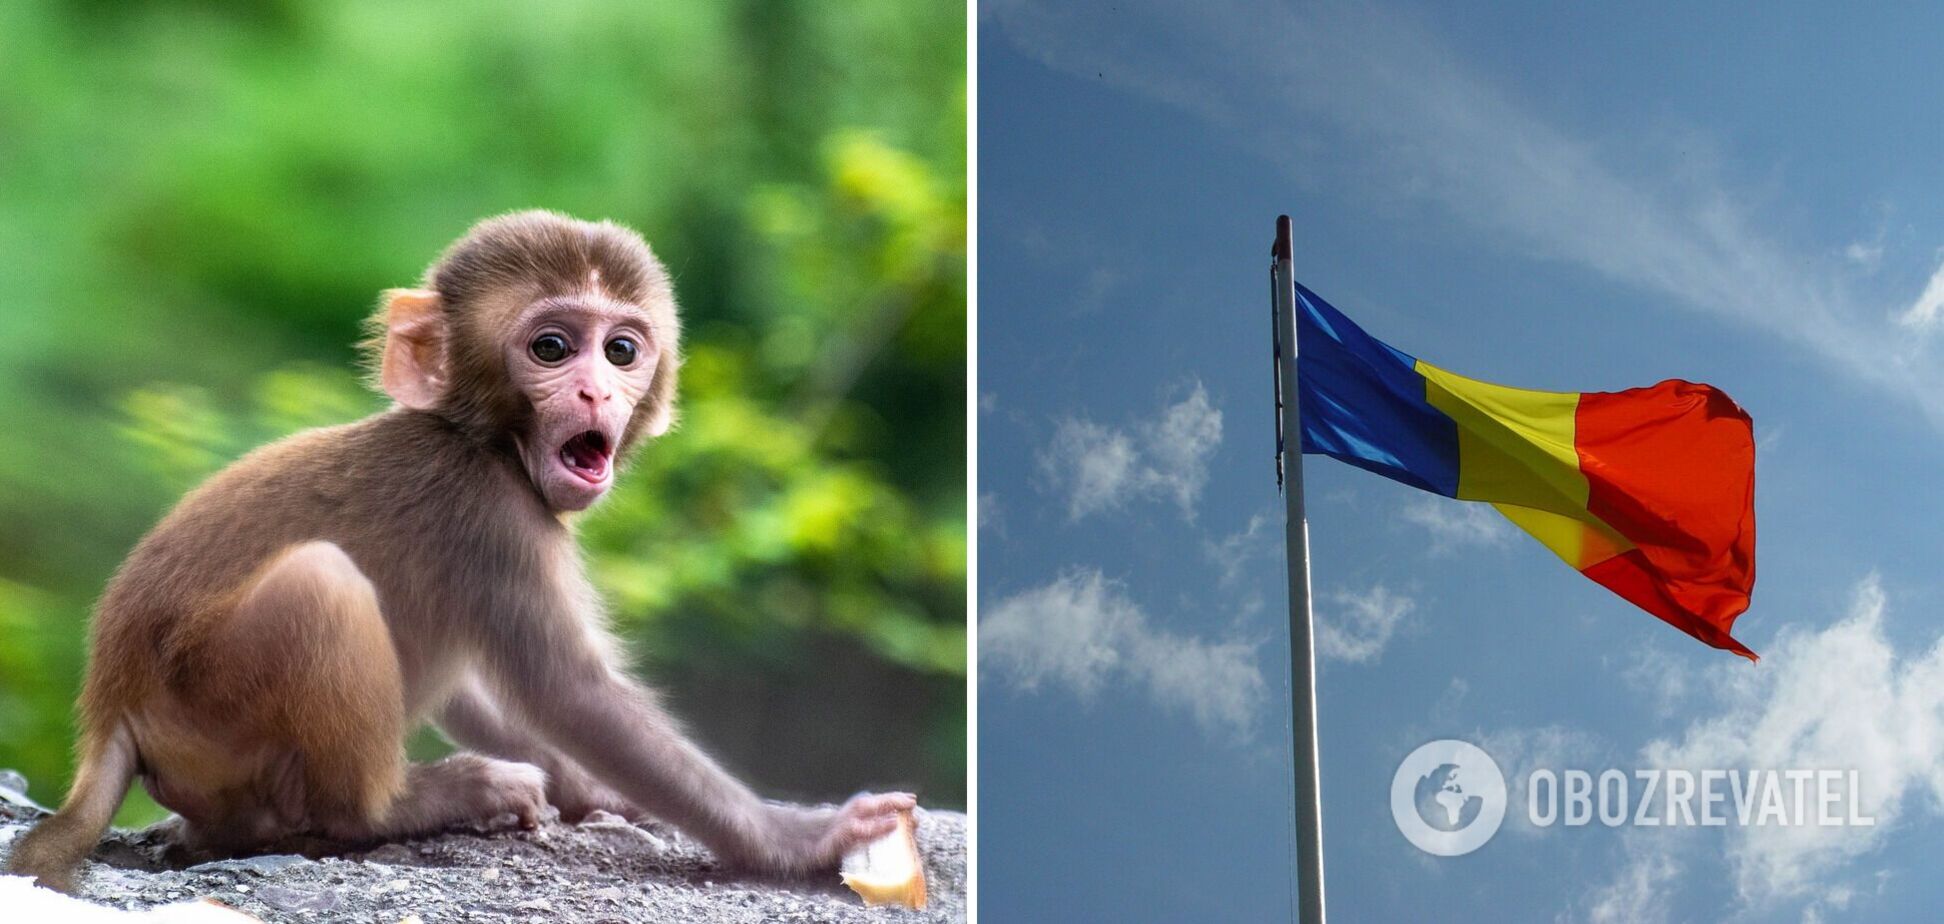 В Румынии зафиксировали первый случай обезьяньей оспы